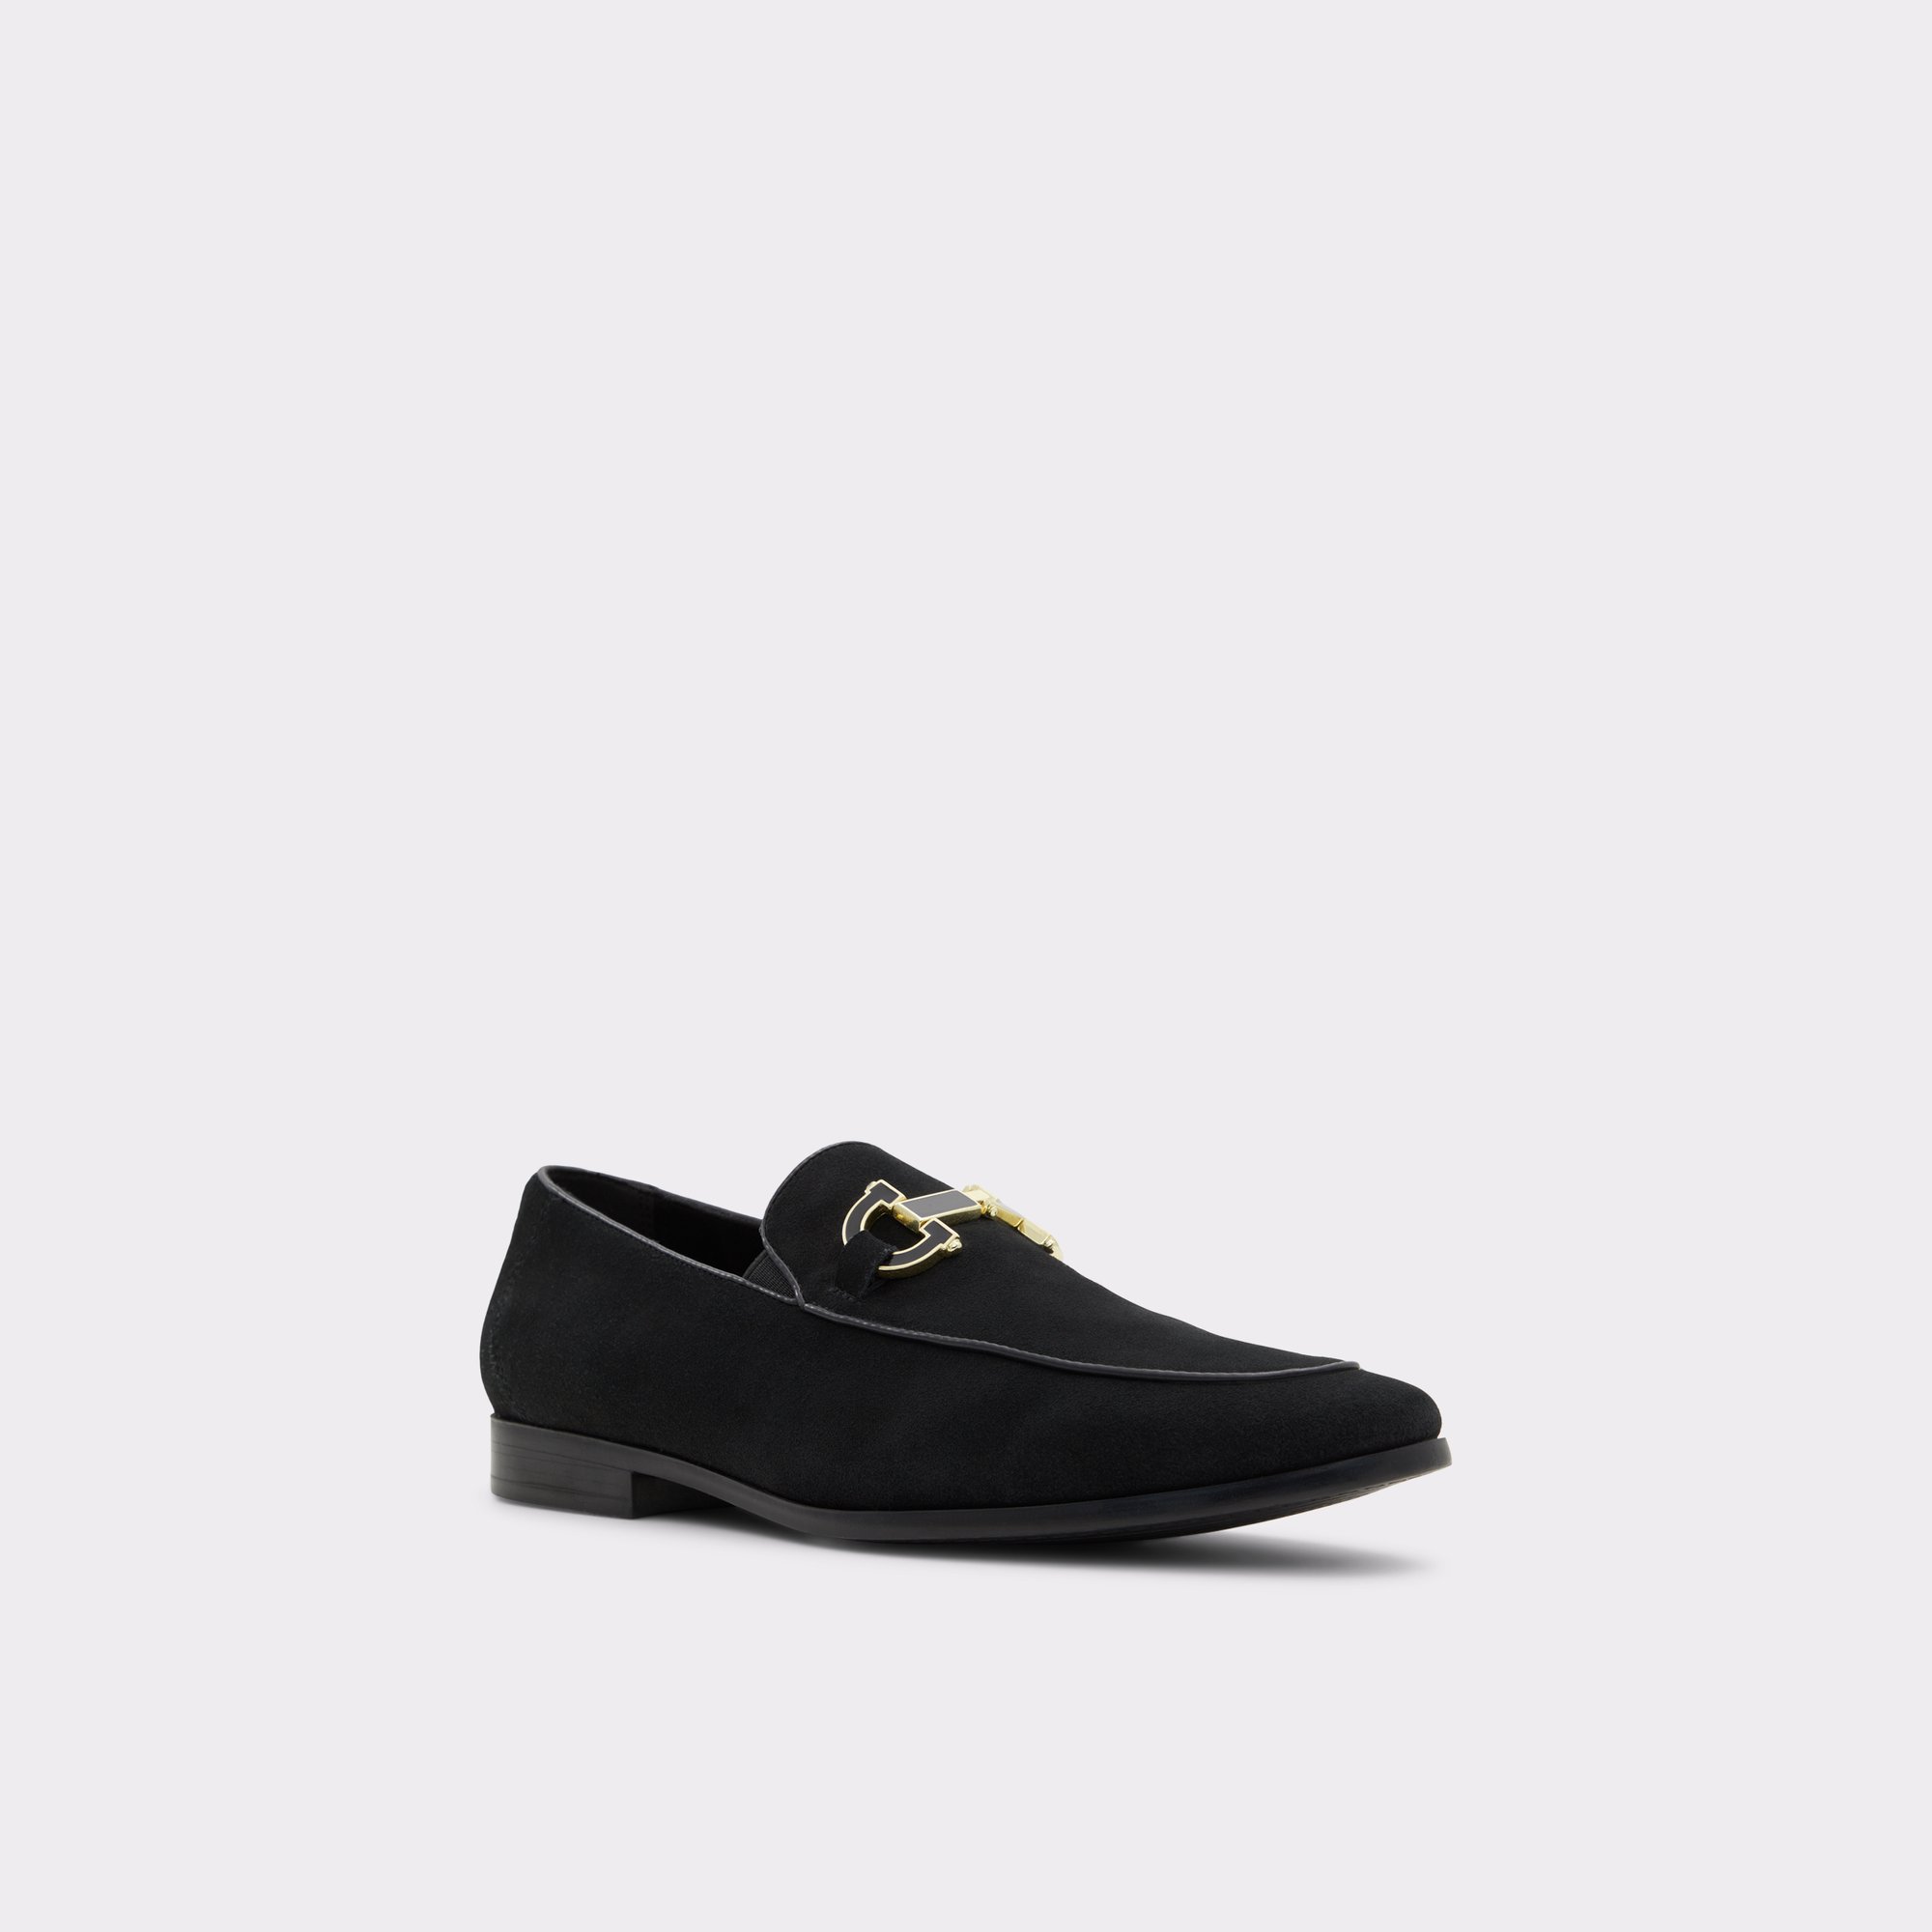 Bolton Black Leather Suede Men's Dress Shoes | ALDO US